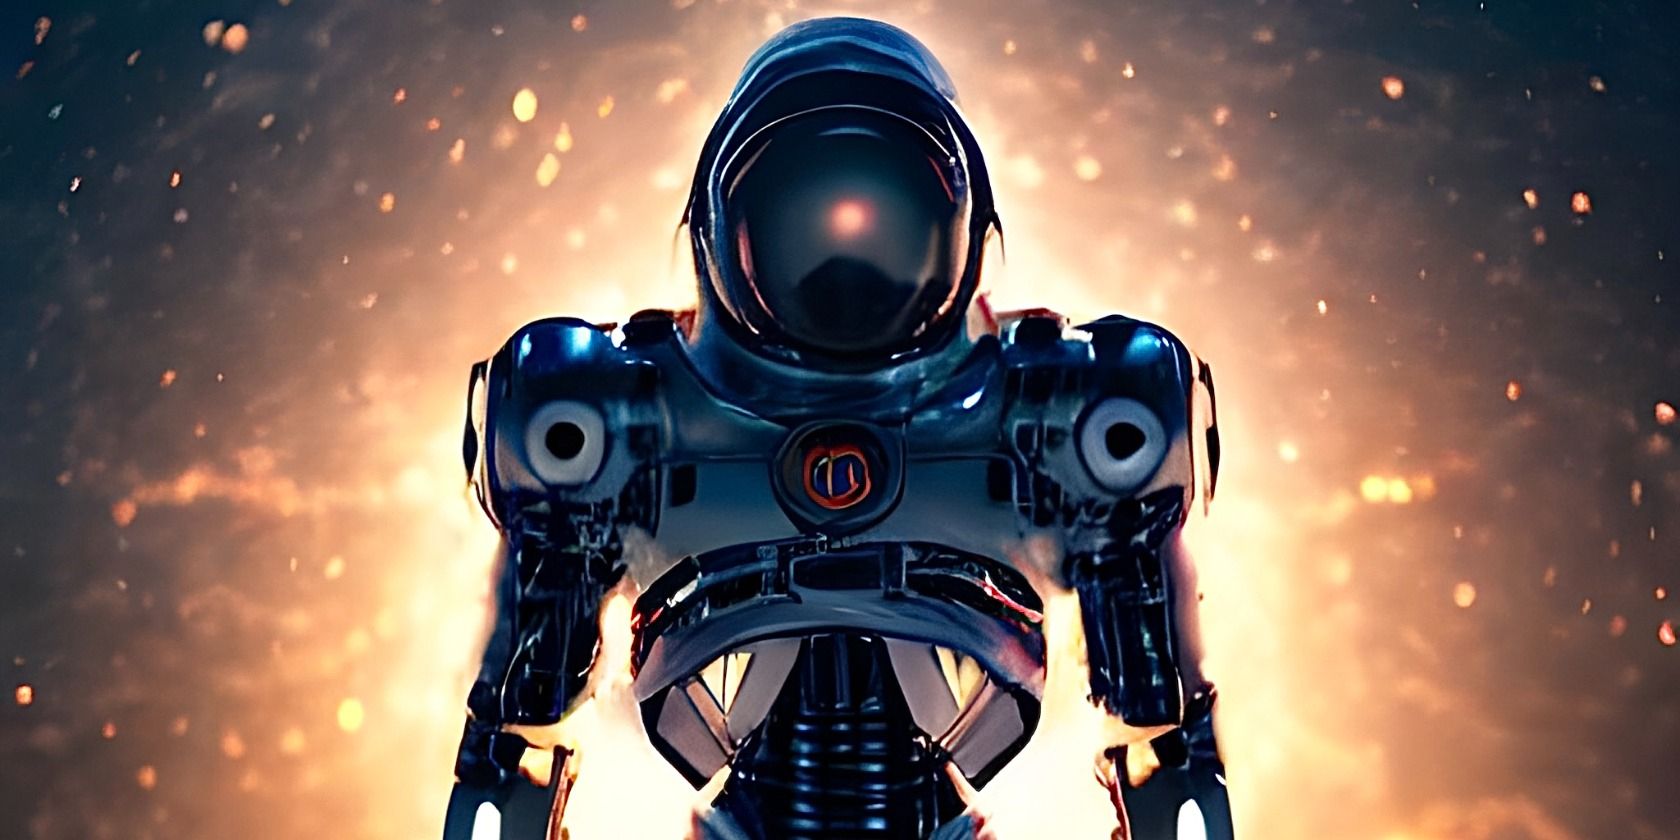 Gambar cyborg yang dihasilkan AI di luar angkasa